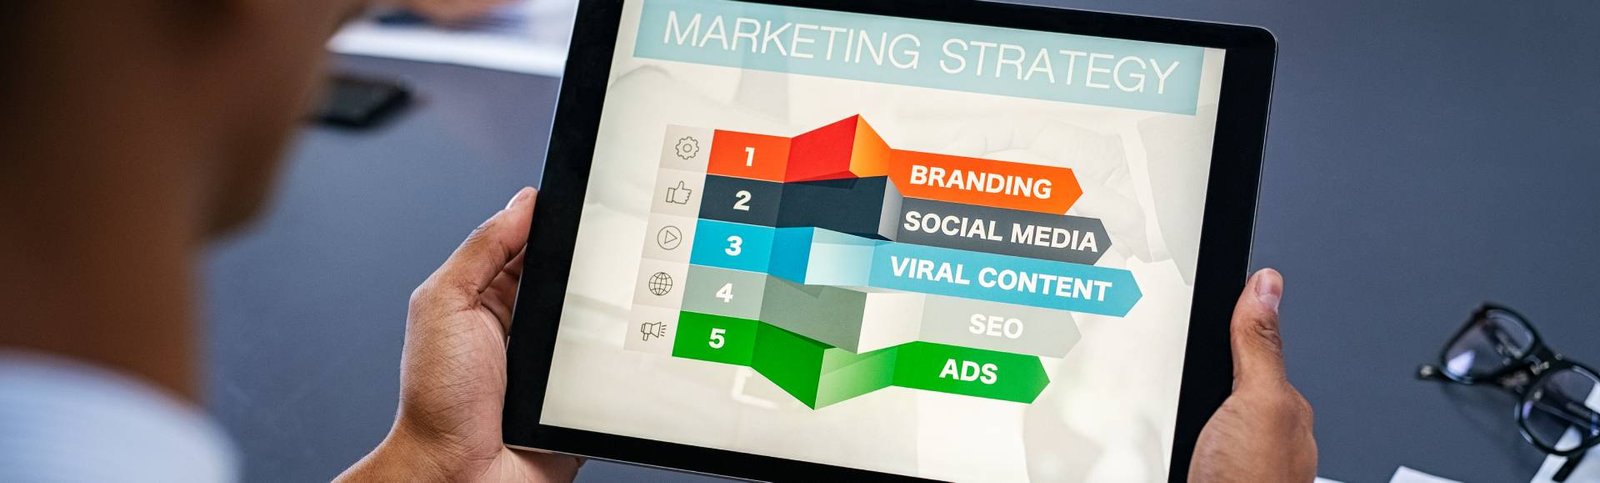 digital-marketing-strategy-2021-08-28-05-58-19-utc-1